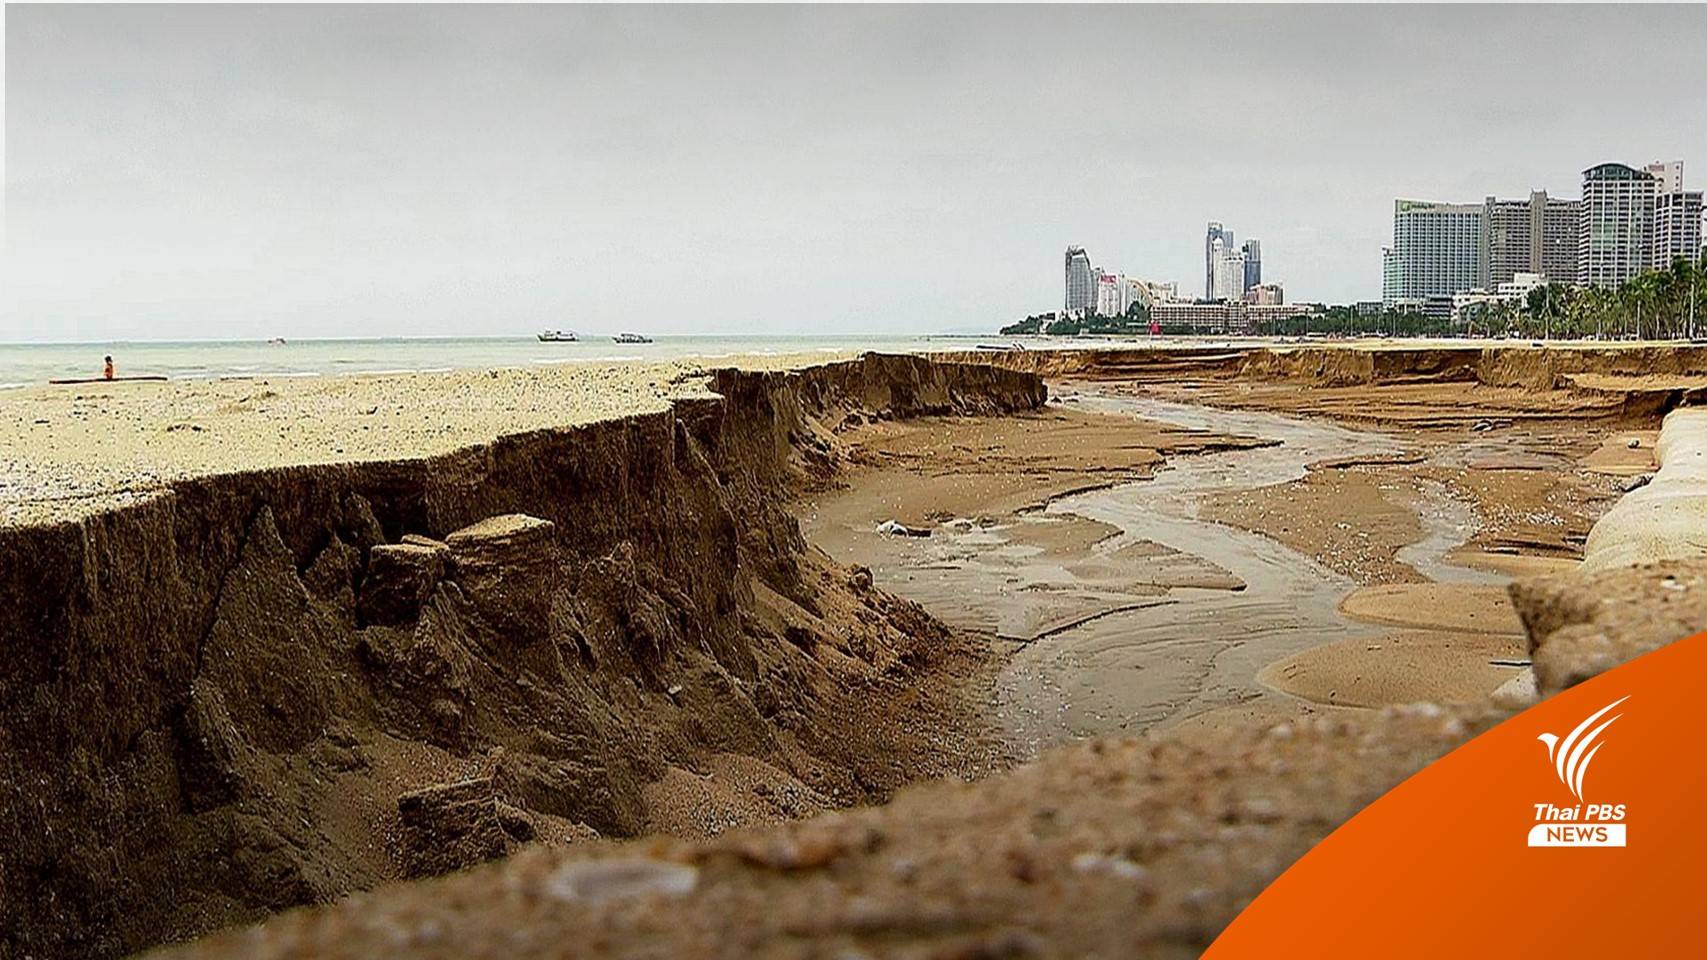 เร่งแก้ปัญหาน้ำเซาะชายหาดเมืองพัทยา เสียหายหลายจุด